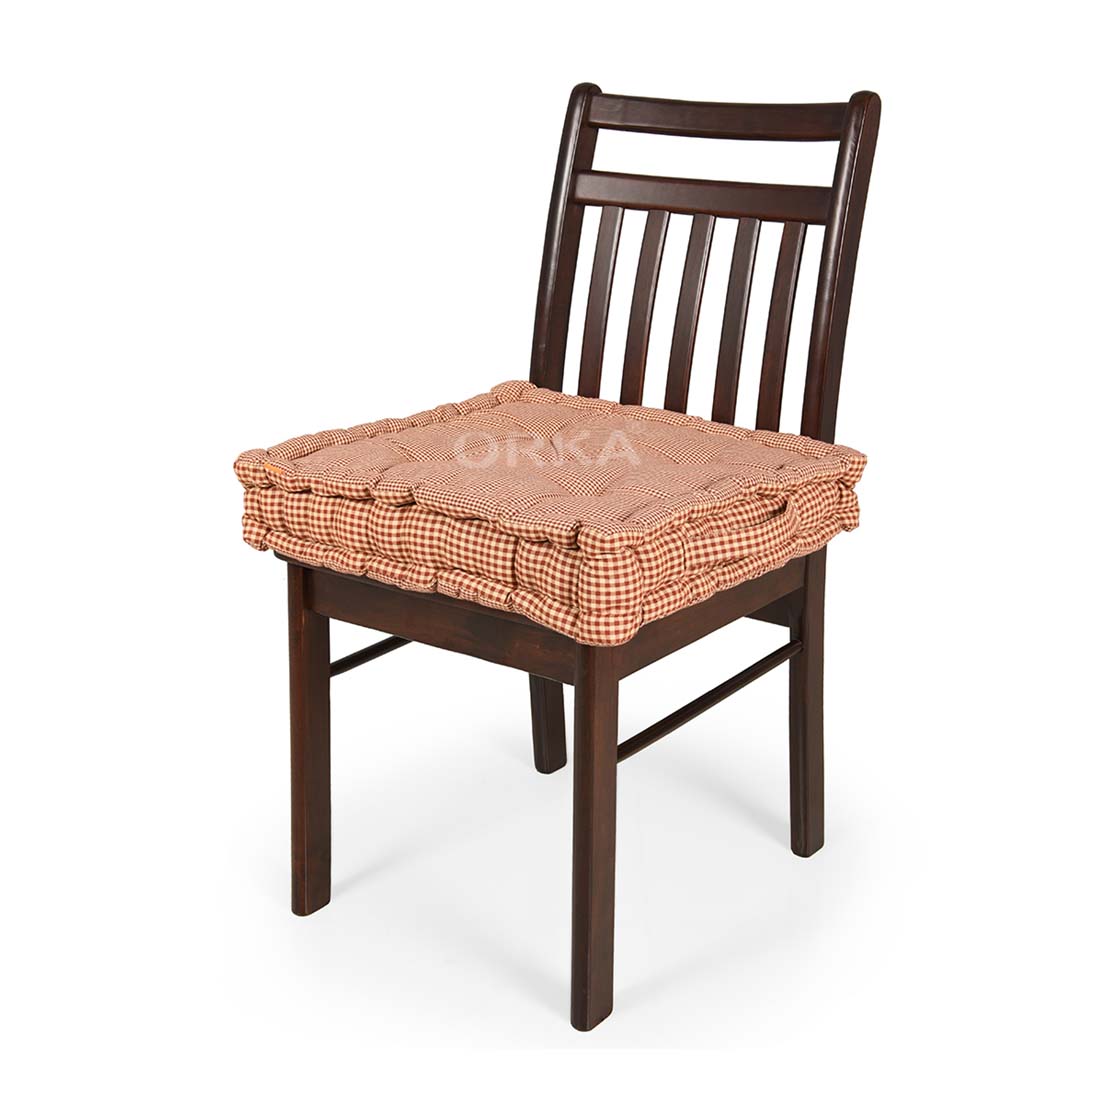 ORKA Box Cushion Chair Pad - Multi